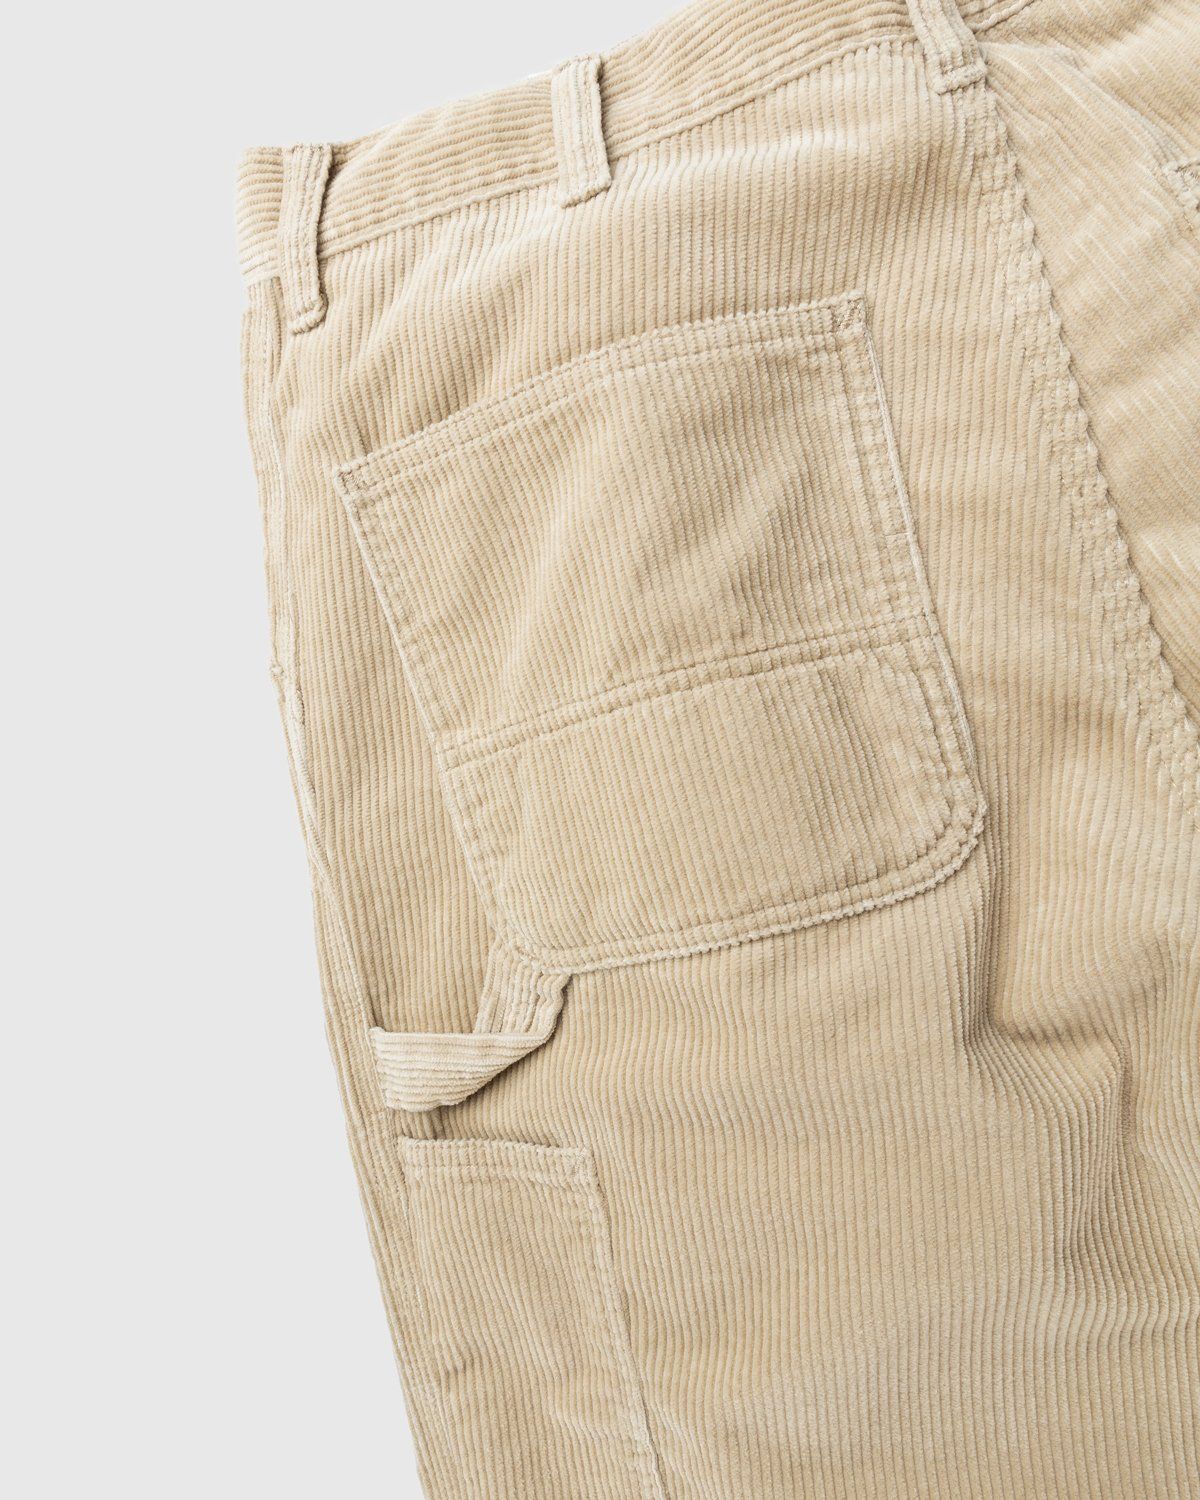 Carhartt WIP – Ruck Single Knee Pant Beige - Trousers - Brown - Image 4